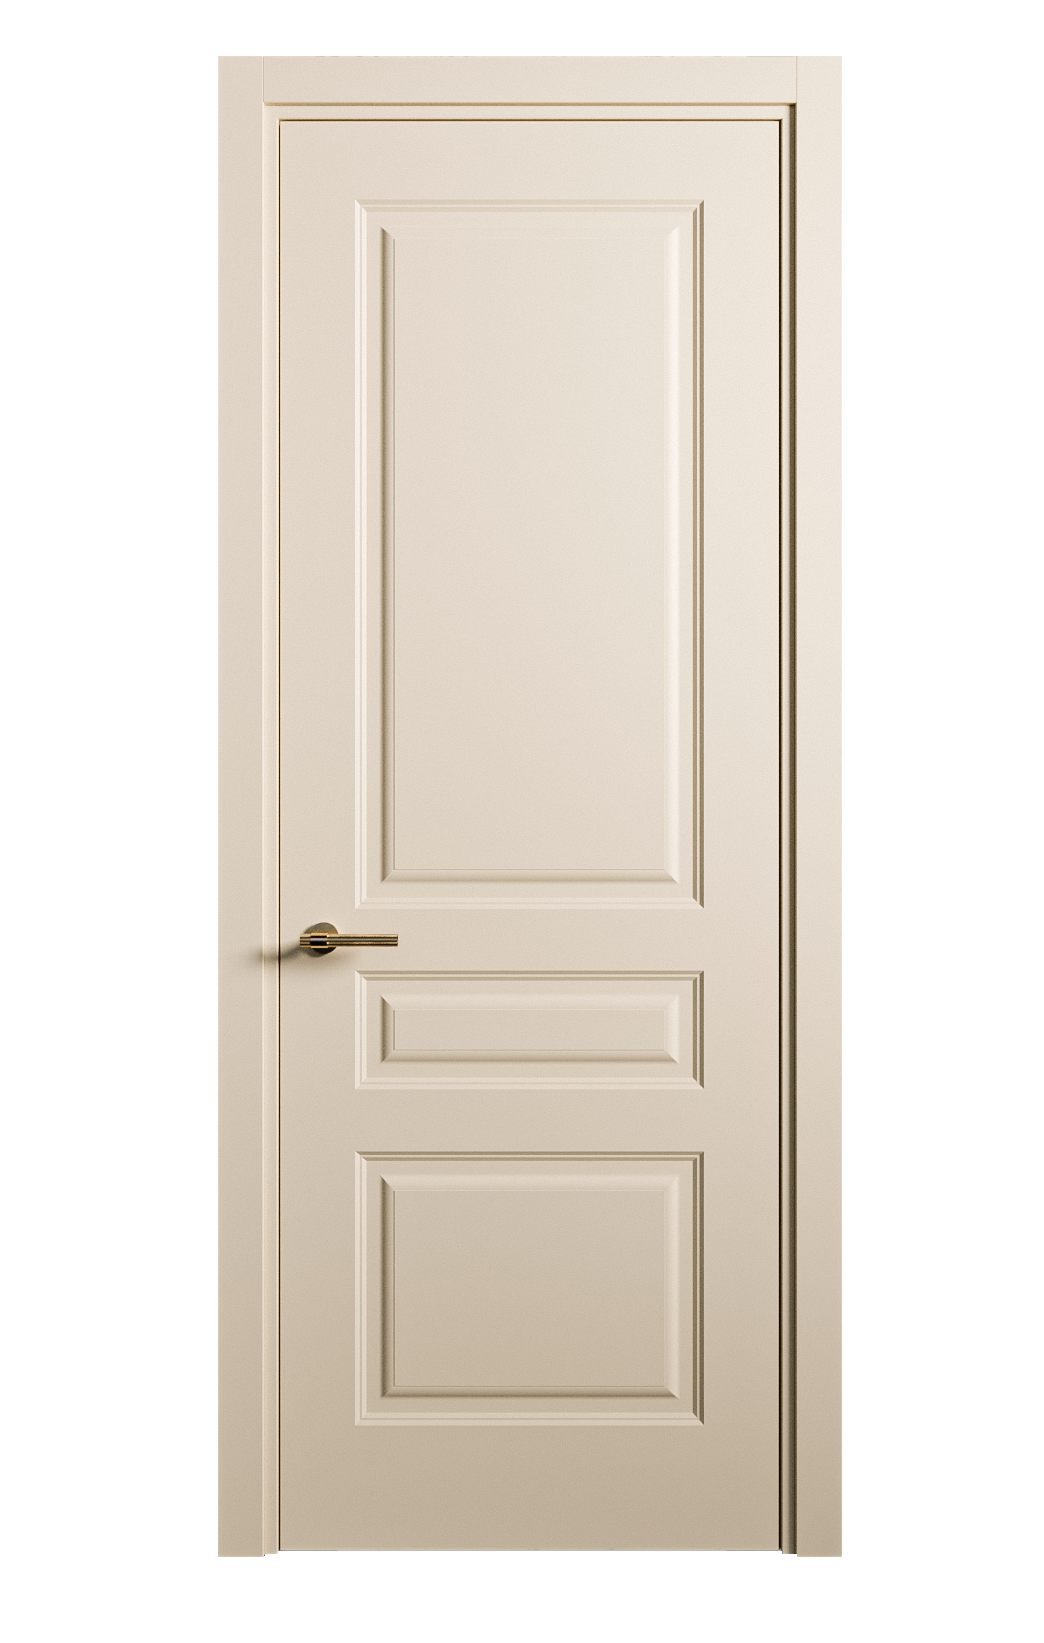 Межкомнатная дверь Вита-2 глухая эмаль ral 1015 26349